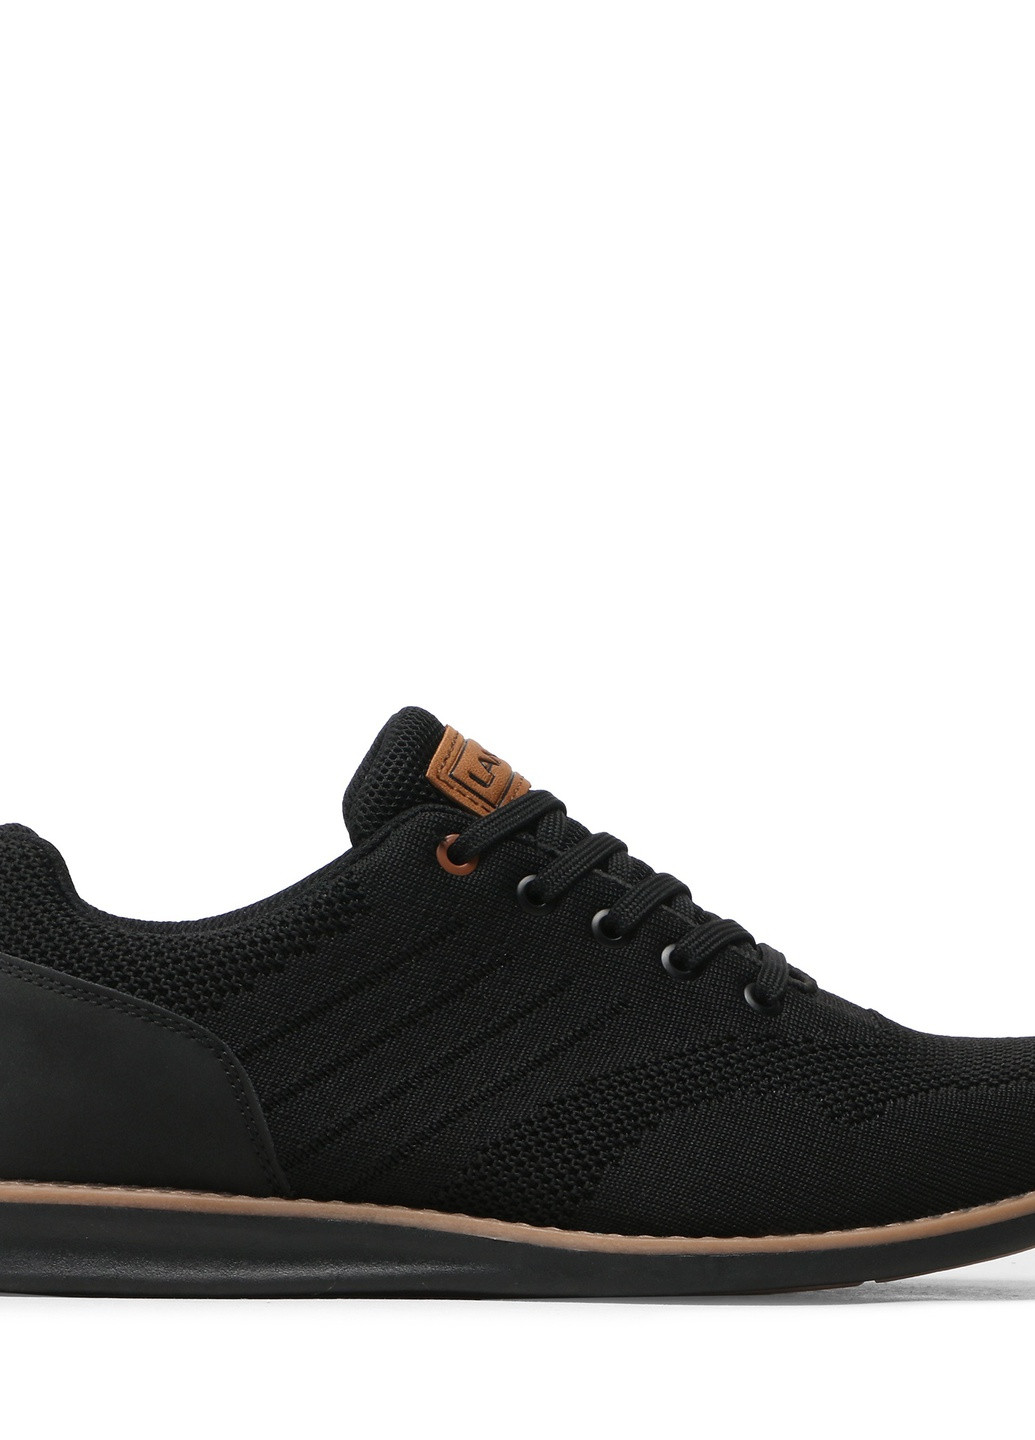 Туфлі MP07-02108-01 Lanetti однотонні чорні кежуали